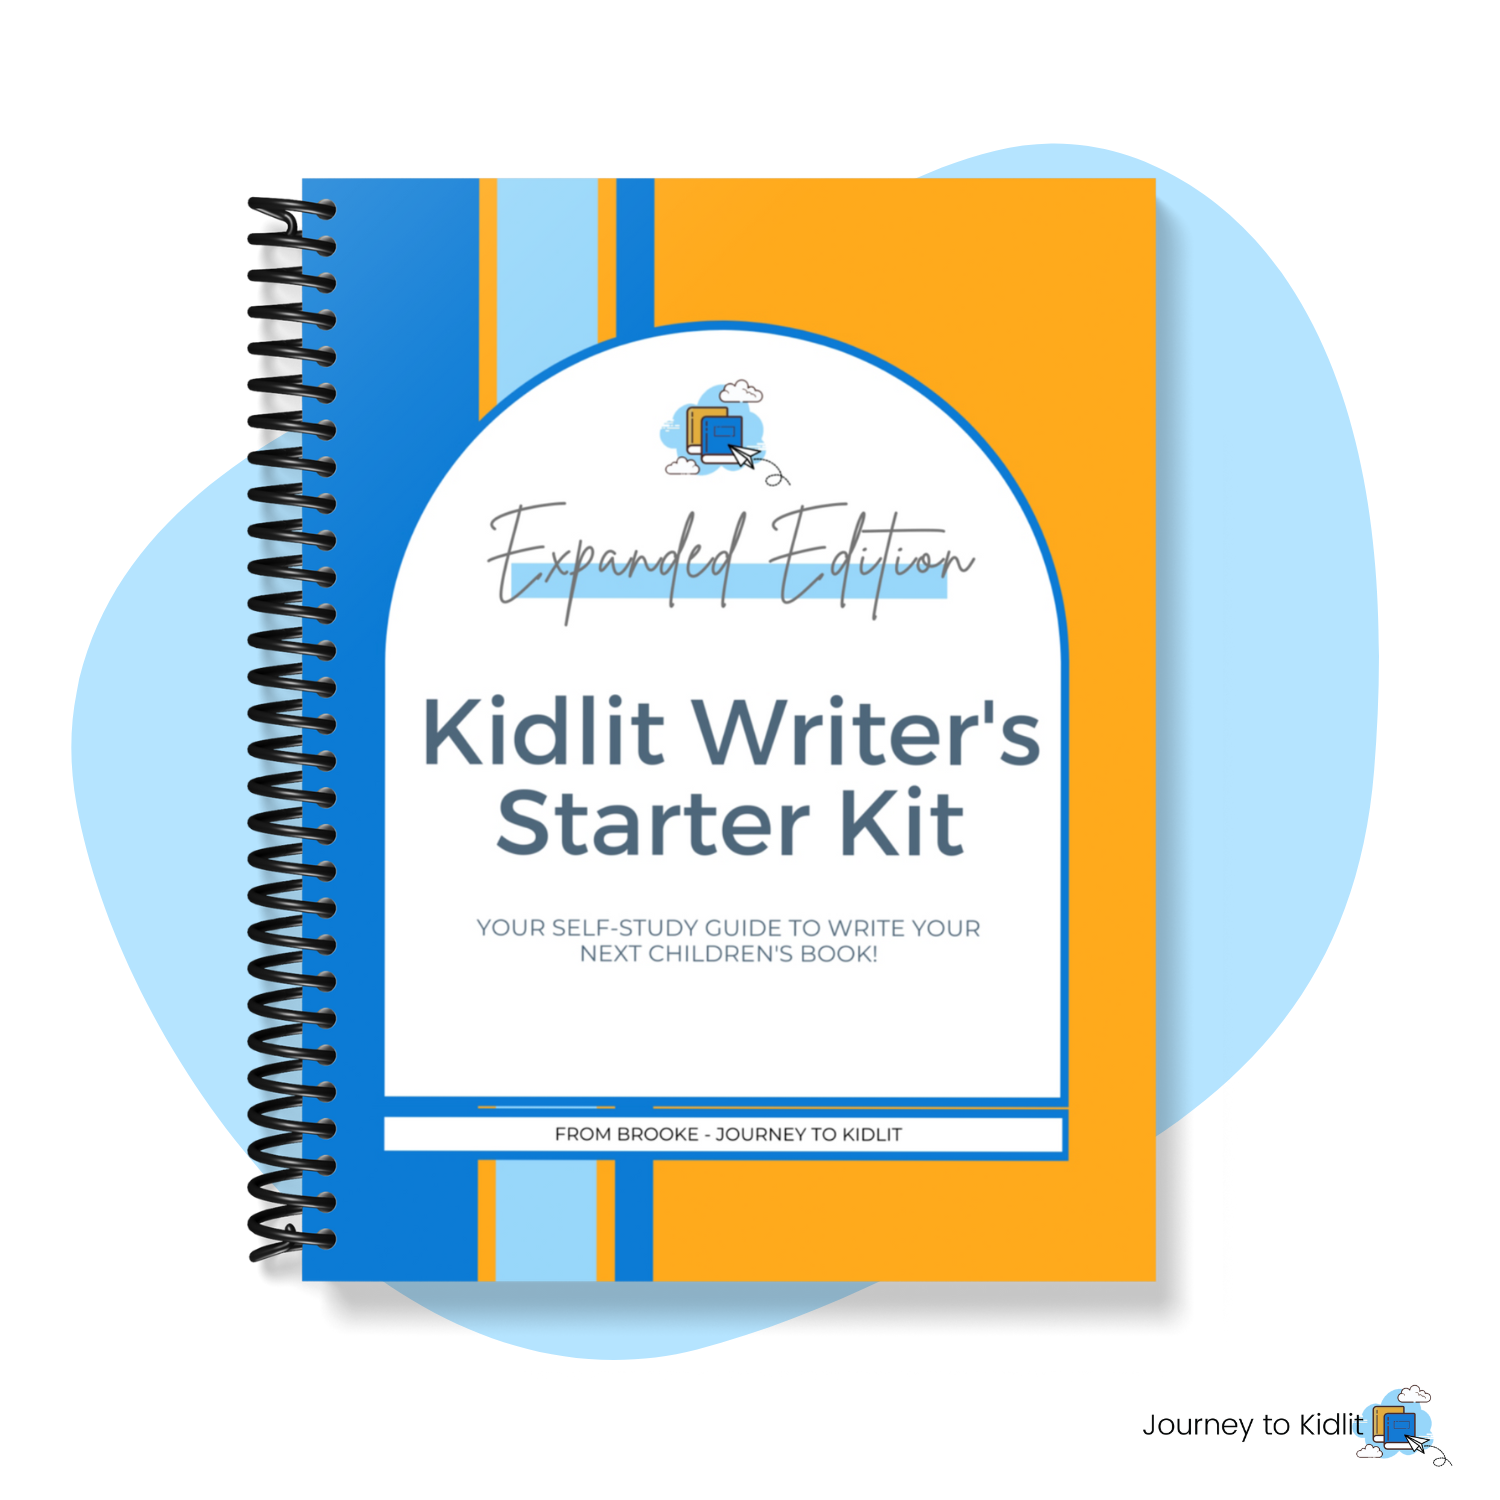 Kidlit Writer's Starter Kit